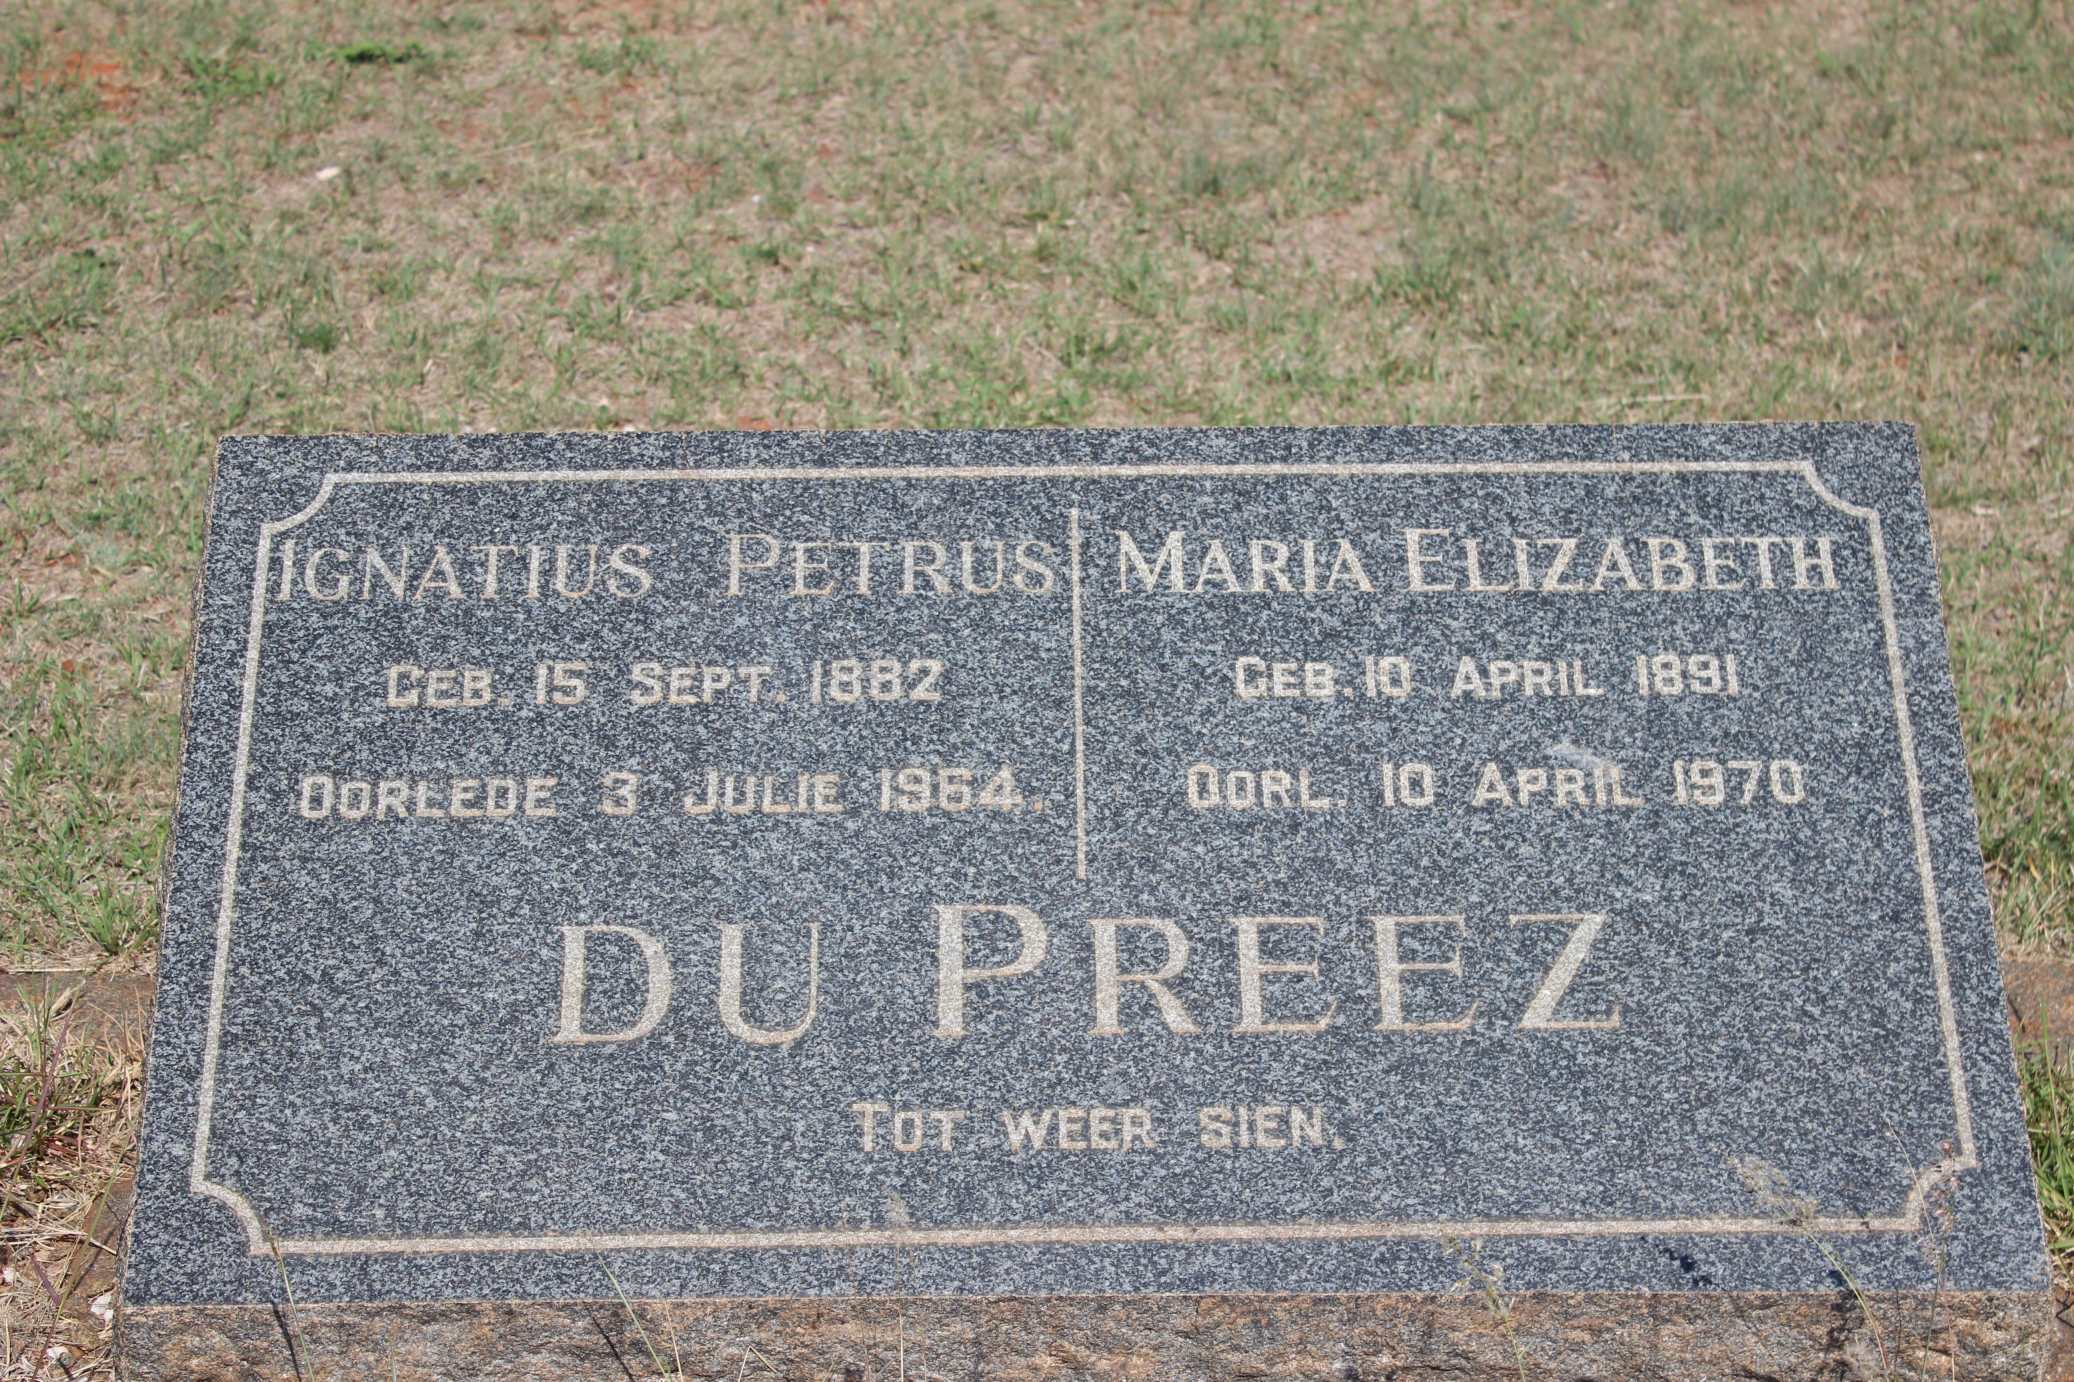 PREEZ Ignatius Petrus, du 1882-1964 & Maria Elizabeth 1891-1970